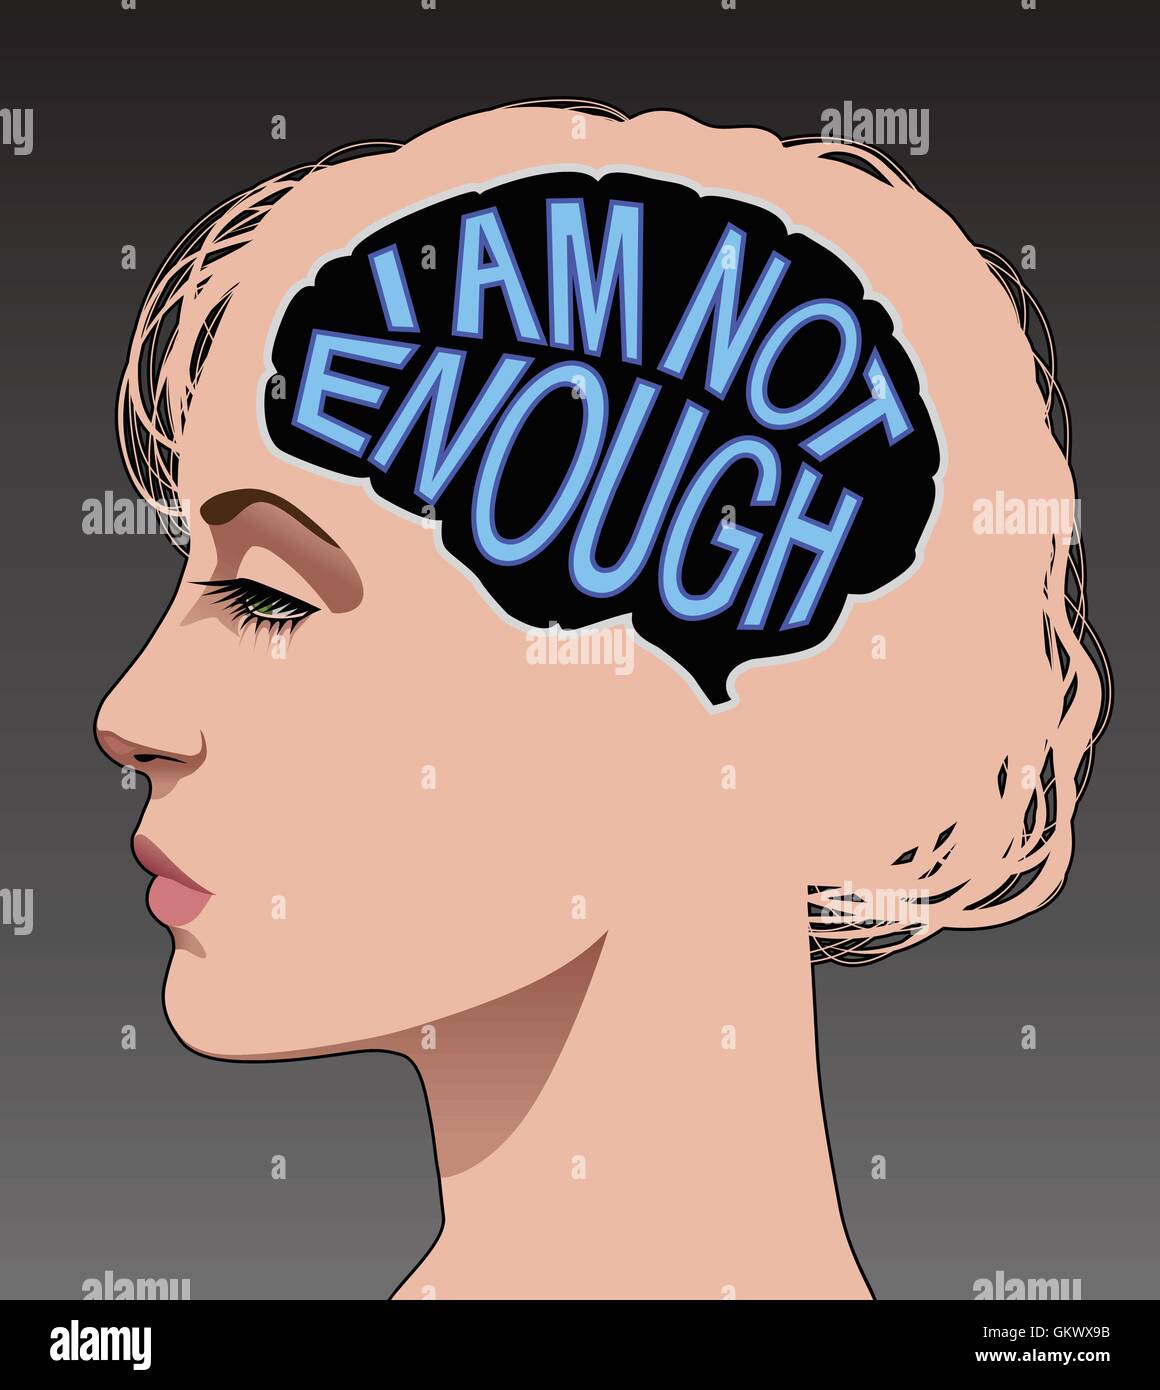 Weibliche Profil mit einem Gehirn, bestehend aus den Worten "Ich bin nicht genug" zur Veranschaulichung geringes Selbstwertgefühl. Stock Vektor